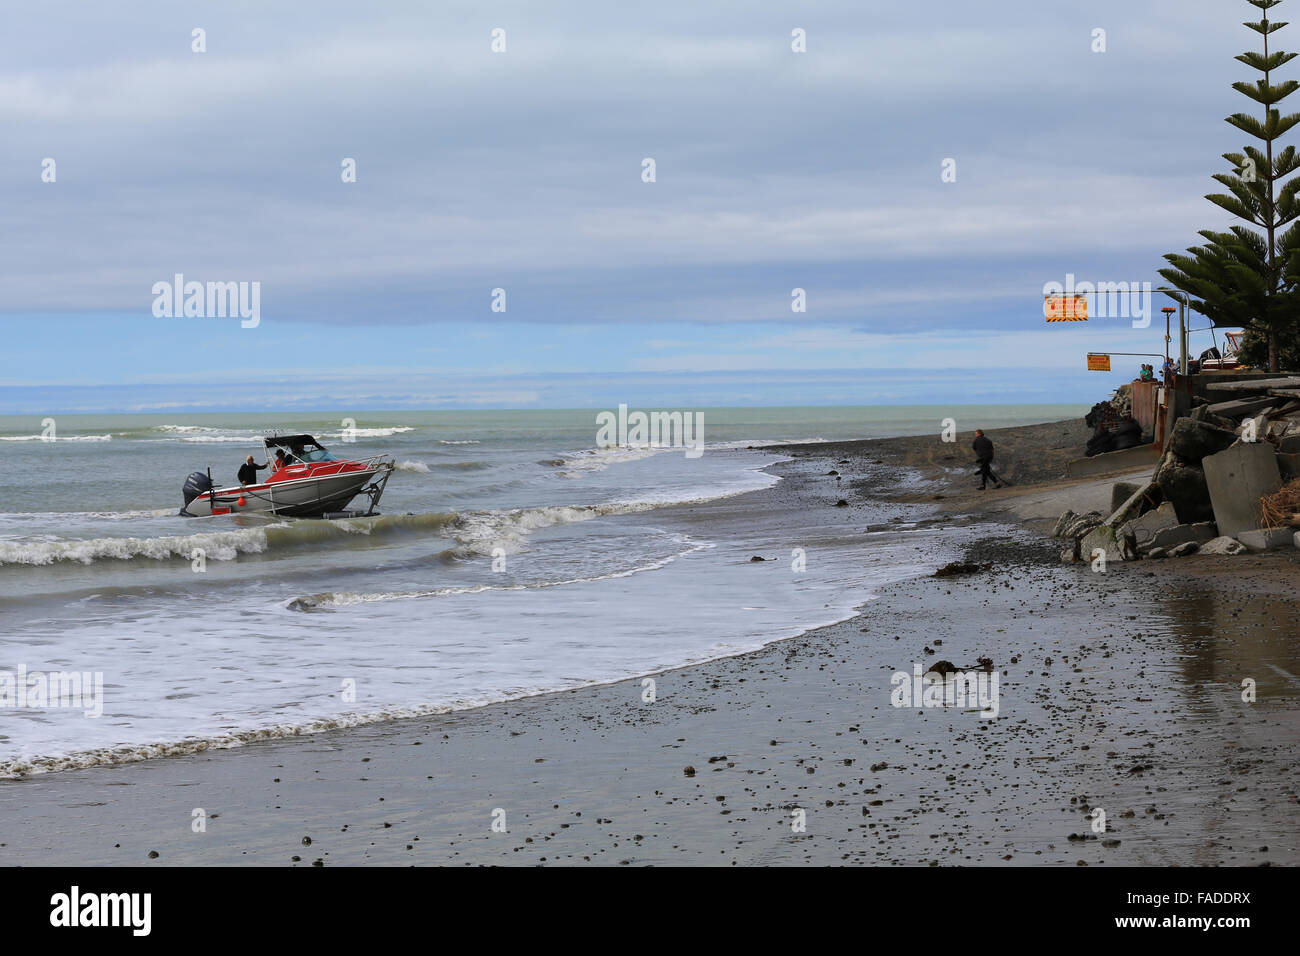 Un pescatore McLay barca è trasportata fuori dall'acqua in tutta la spiaggia su una barca rimorchio in Clifton, Hawke's Bay, Nuova Zelanda. Foto Stock